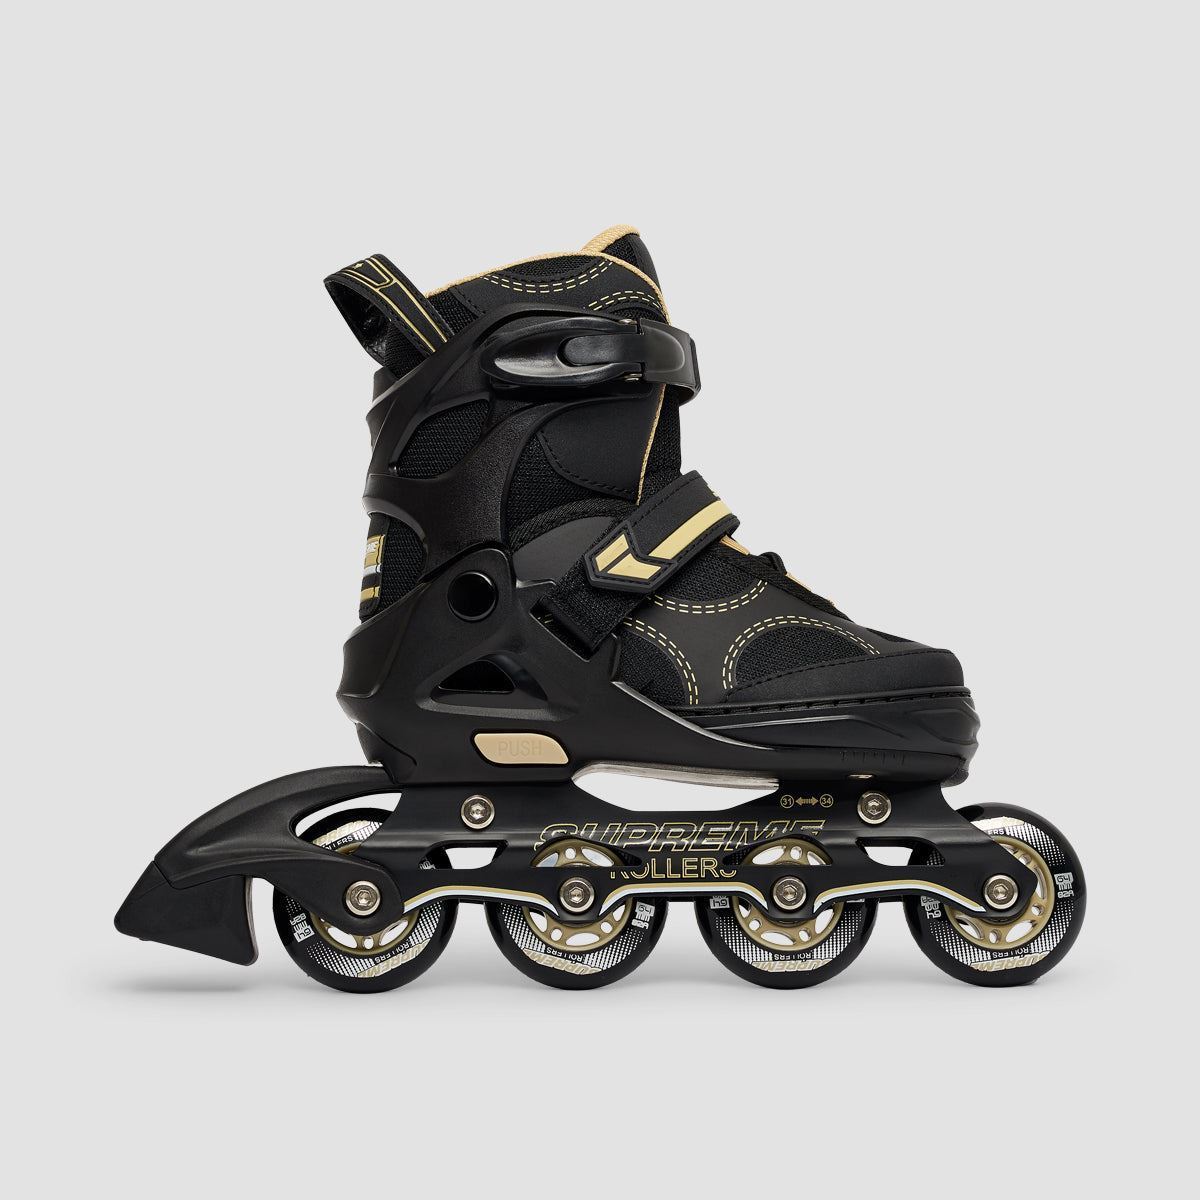 Supreme Rollers Venice Adjustable Inline Skates Gold - Kids